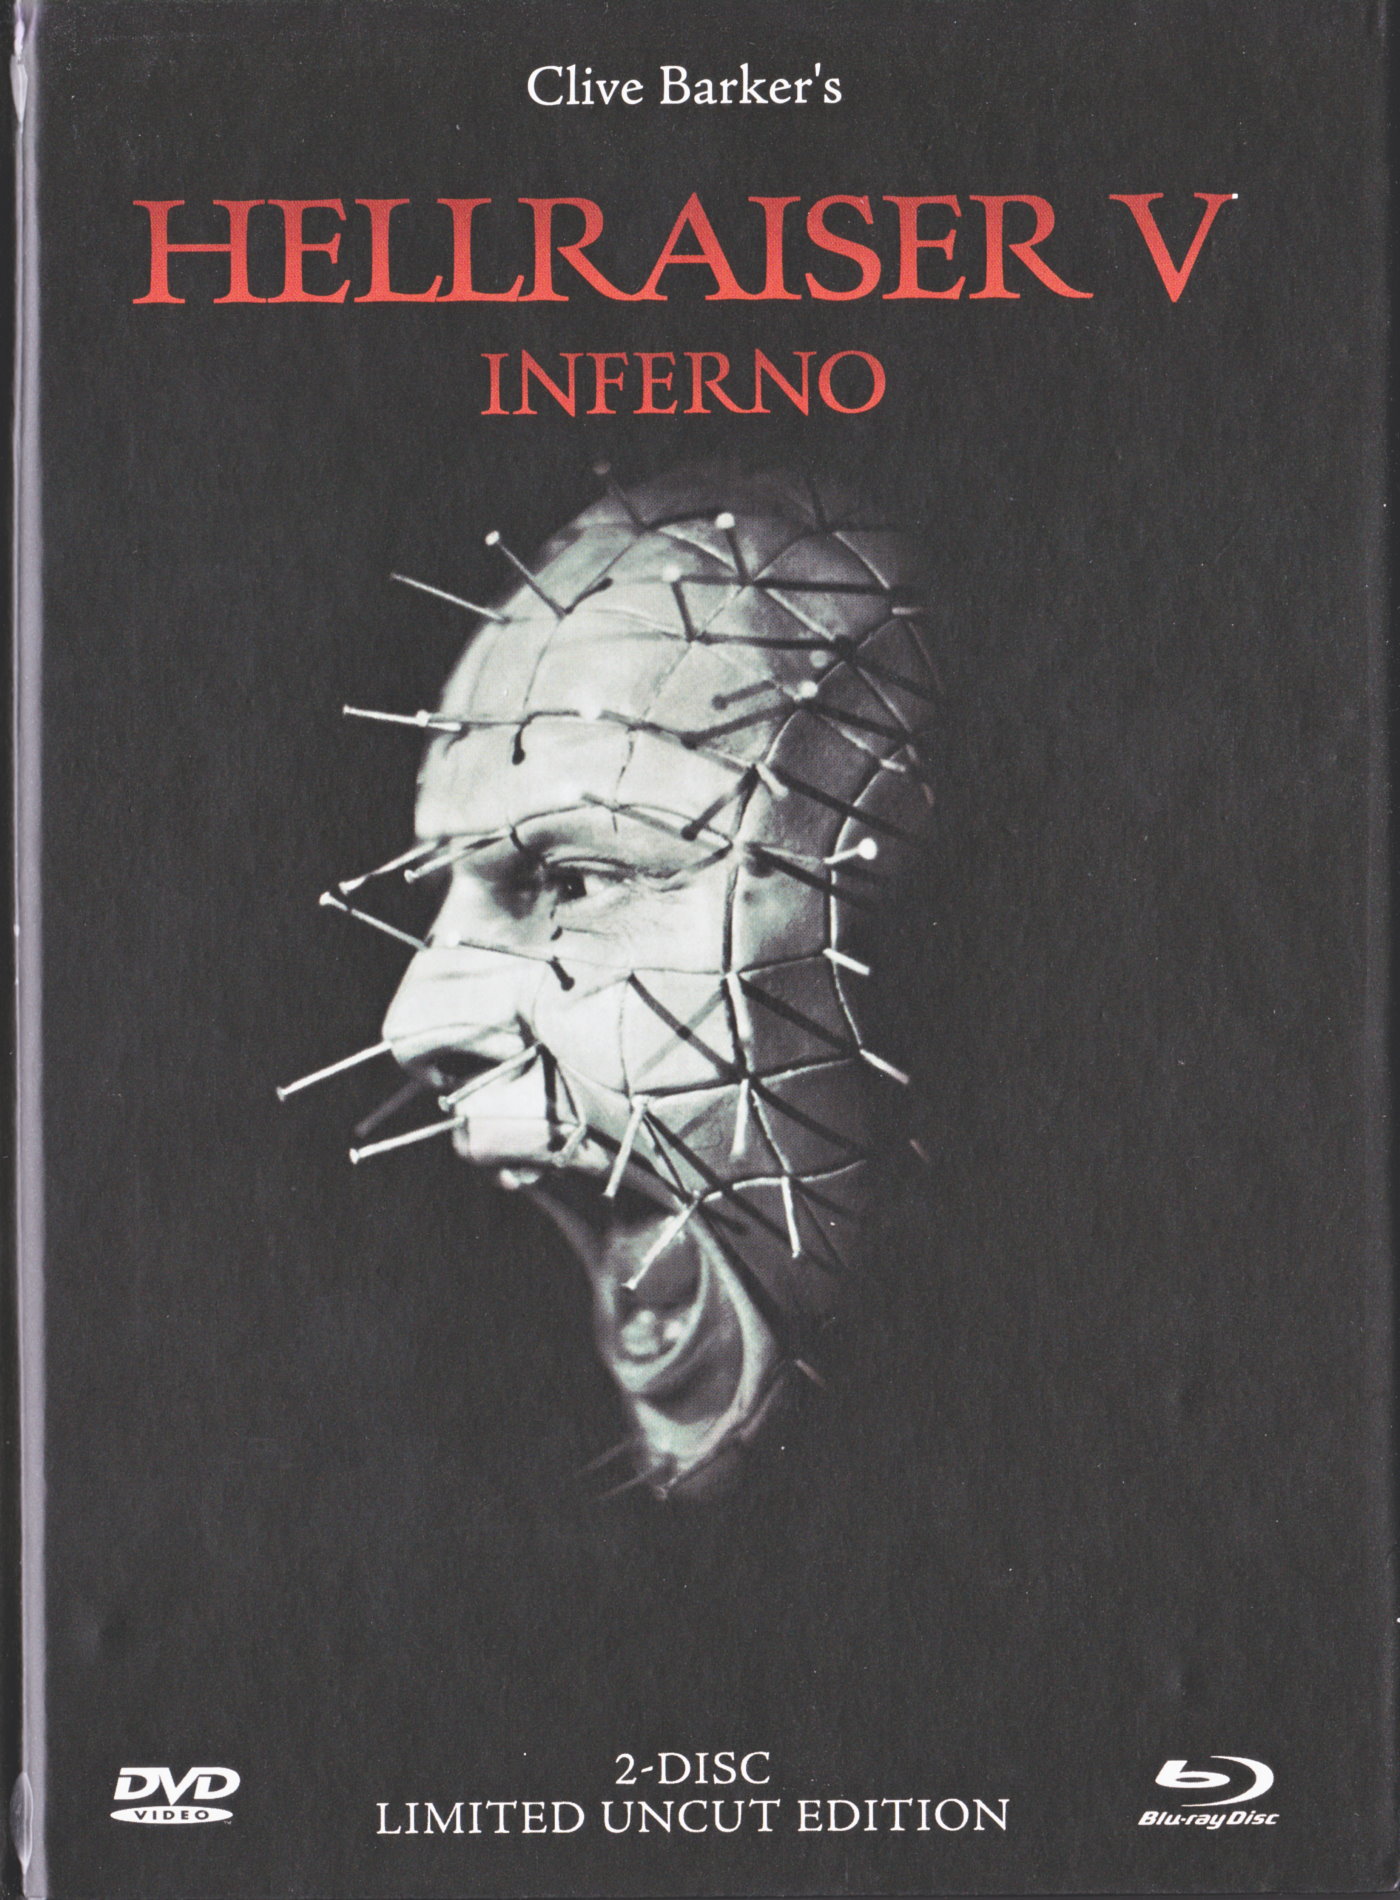 Cover - Hellraiser V - Inferno.jpg